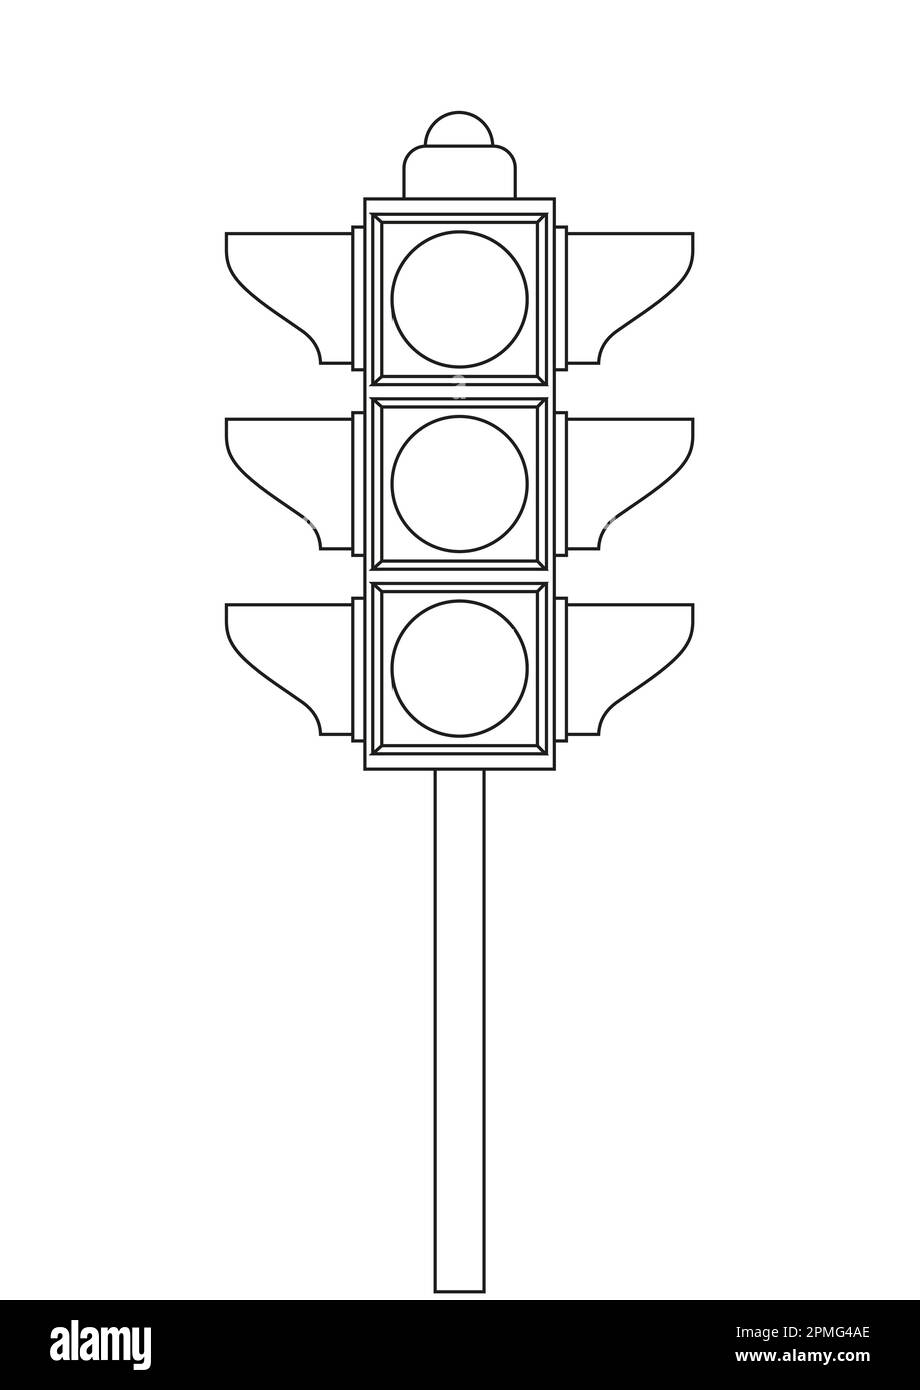 Schwarz-weiße Ampel-Clipart. Farbseite der Ampel Stock Vektor